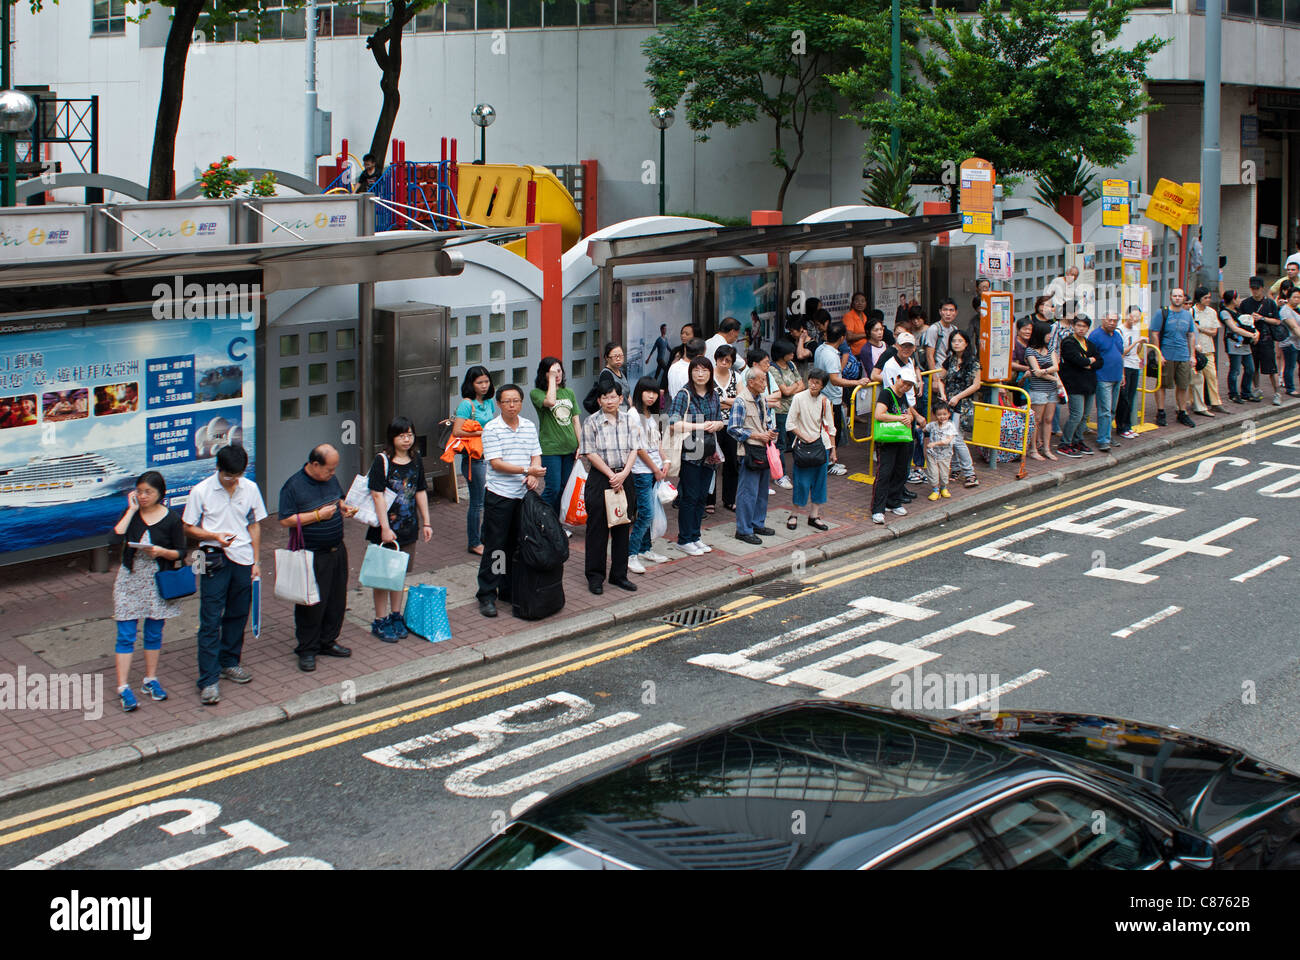 People waiting at bus stops, Wan Chai, Hong Kong Stock Photo